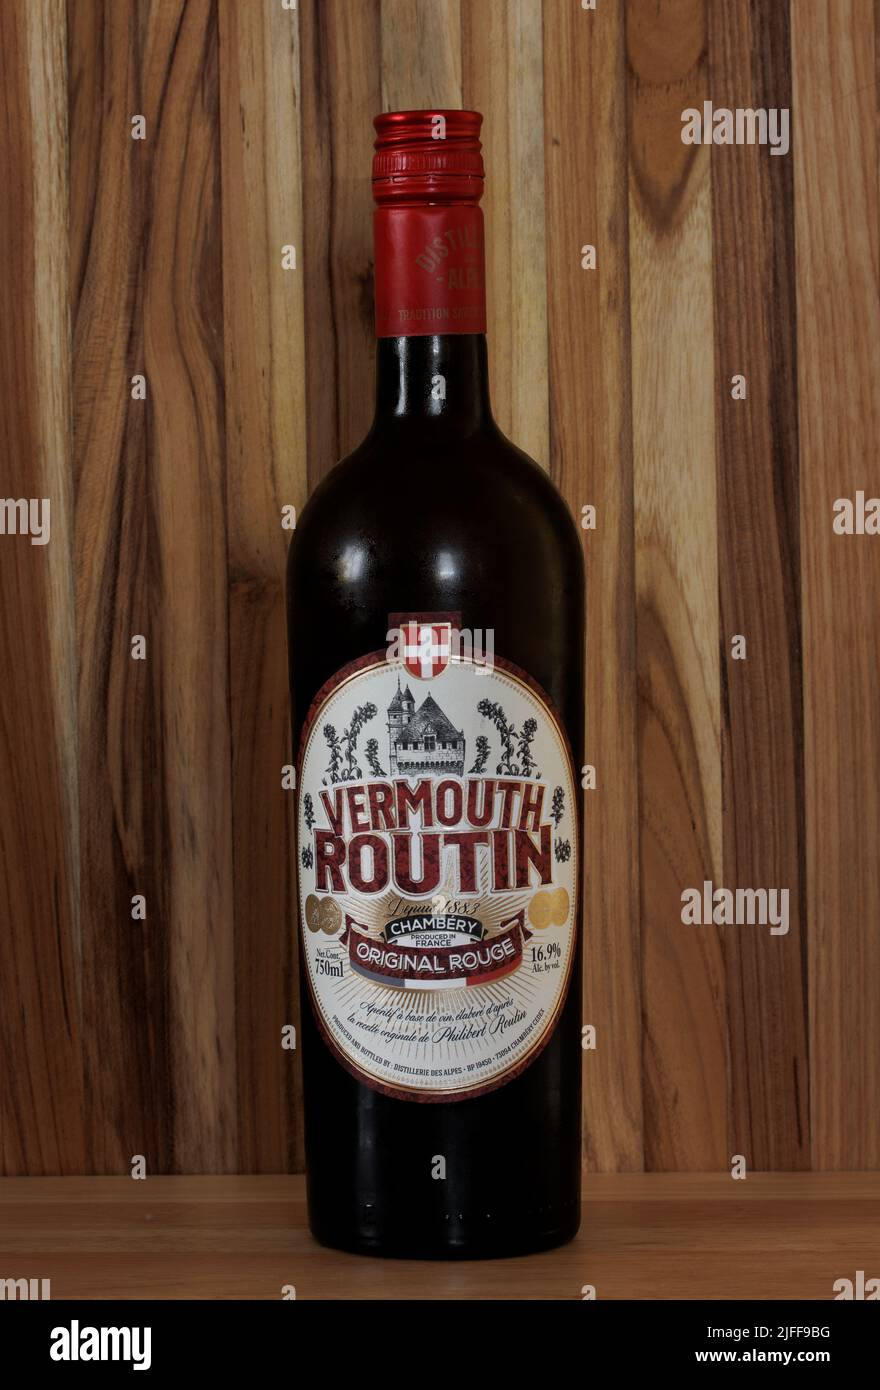 Botella de Vermouth Routin, rouge original de Chambery, Francia, un aperitivo seco, herbal Foto de stock